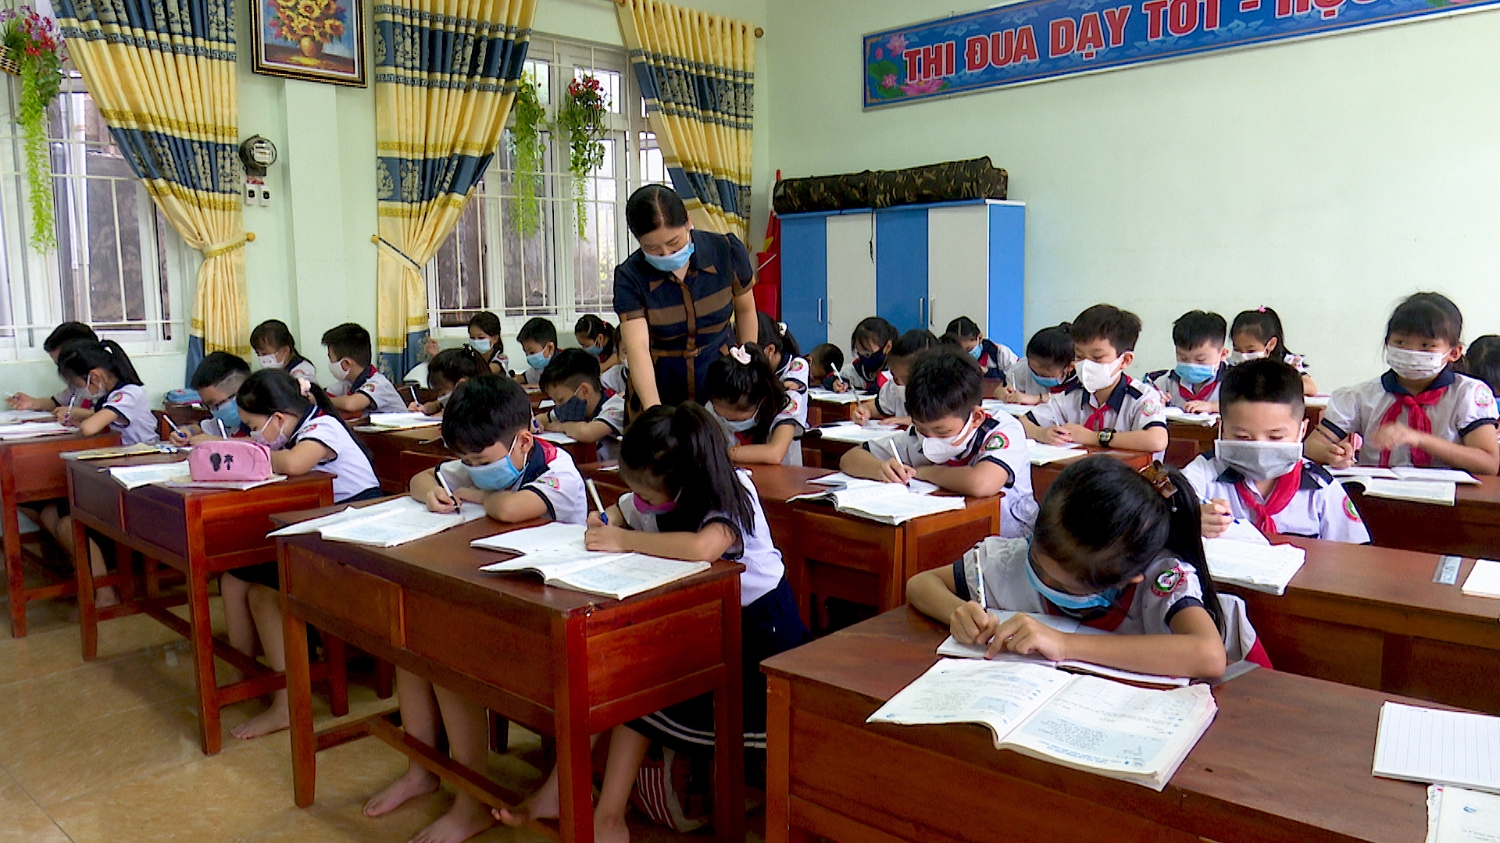 Thị xã Ba Đồn: Các trường học linh hoạt tổ chức dạy học, giữ ổn định chất lượng giáo dục